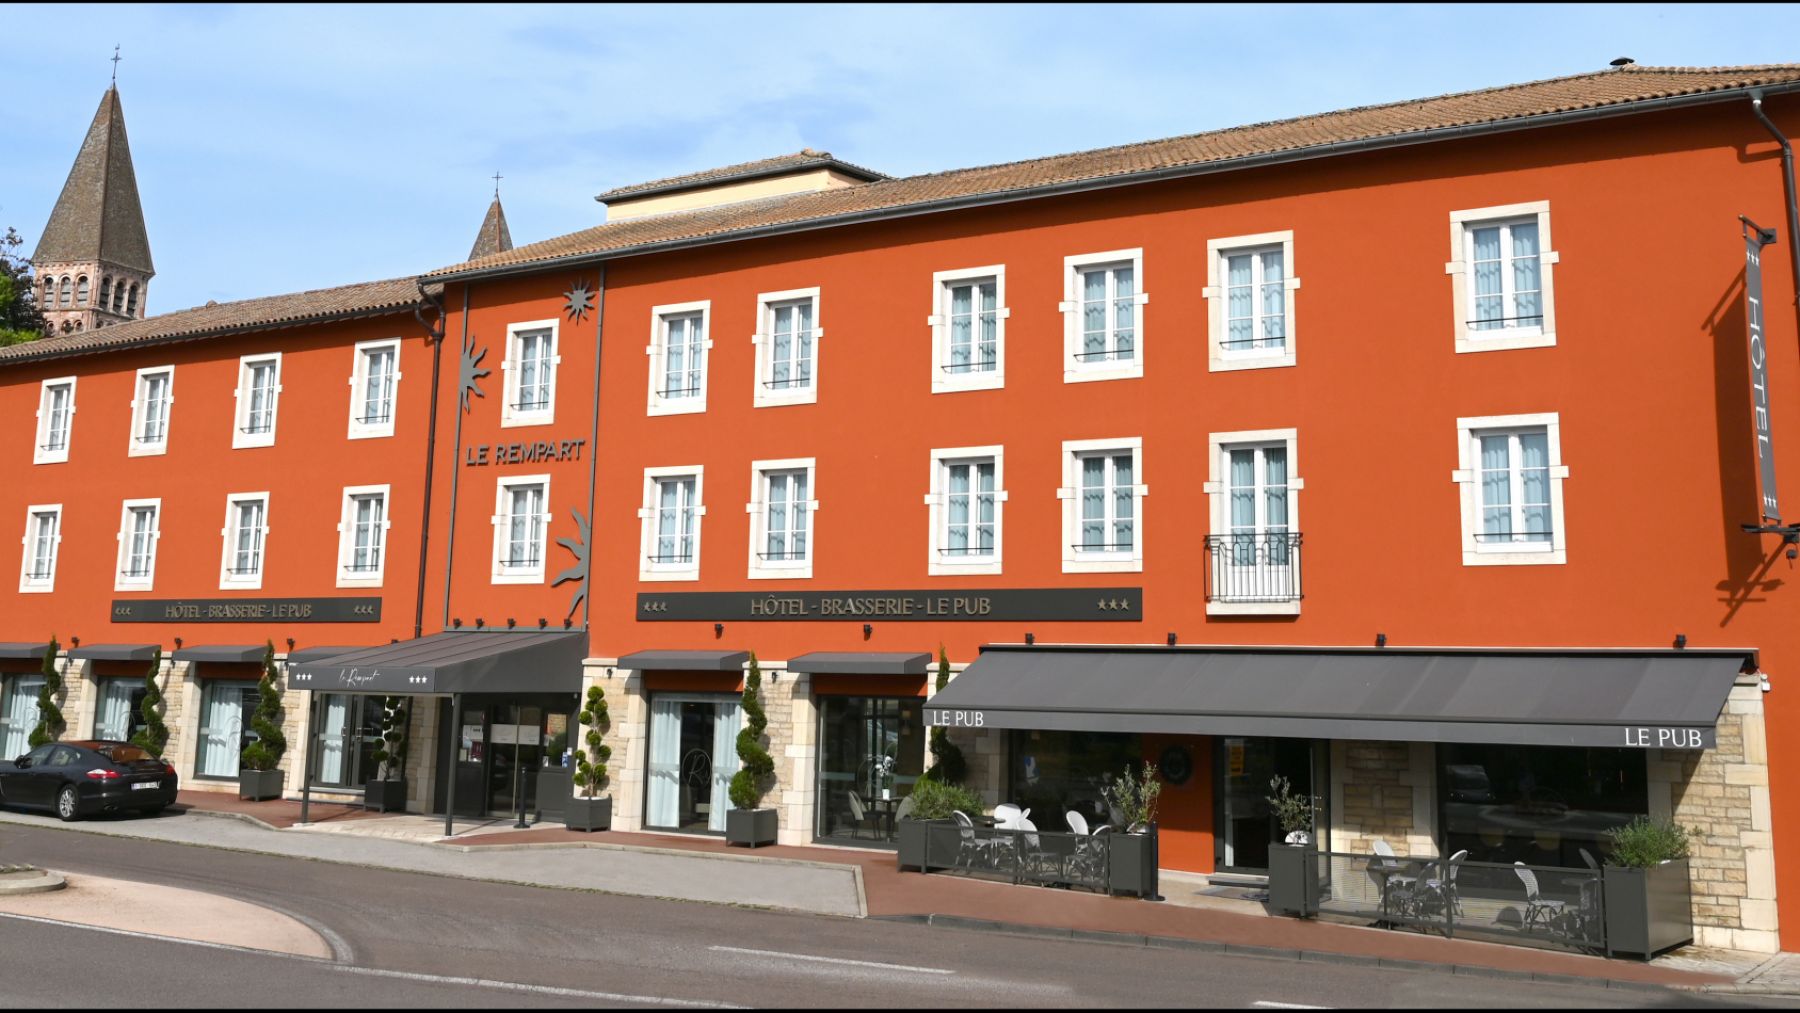  Hotel Restaurant Le Rempart in Tournus